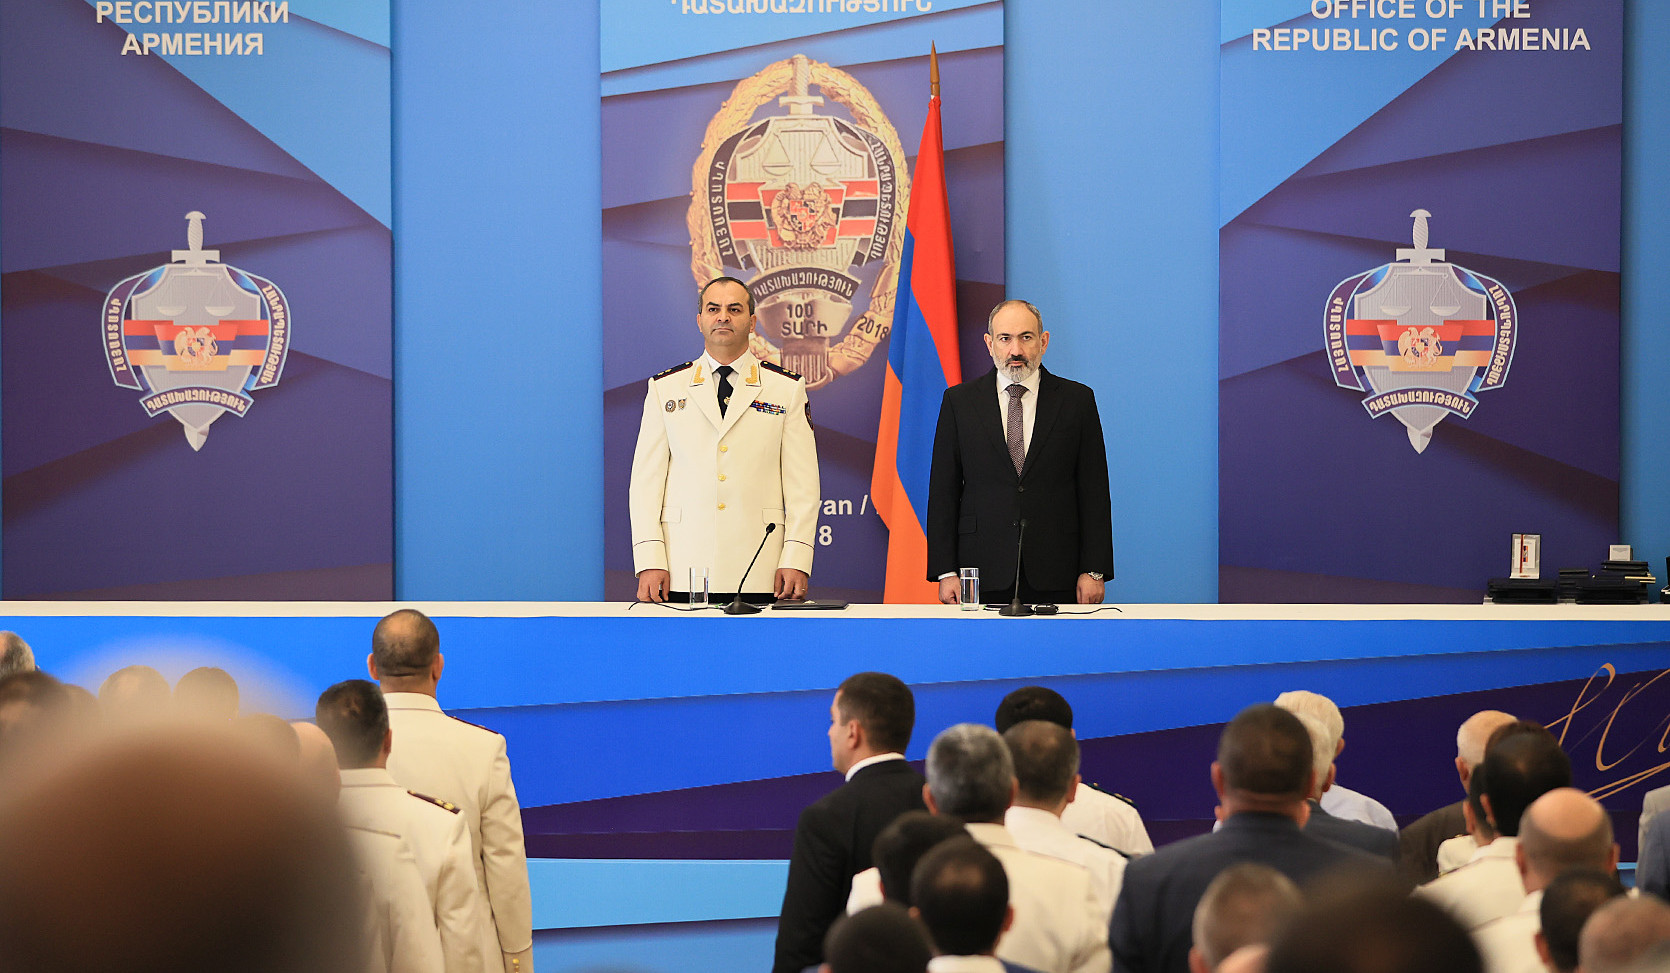 Принцип неотвратимости наказания является важнейшим фактором становления государства: премьер-министр Армении поздравил сотрудников системы прокуратуры